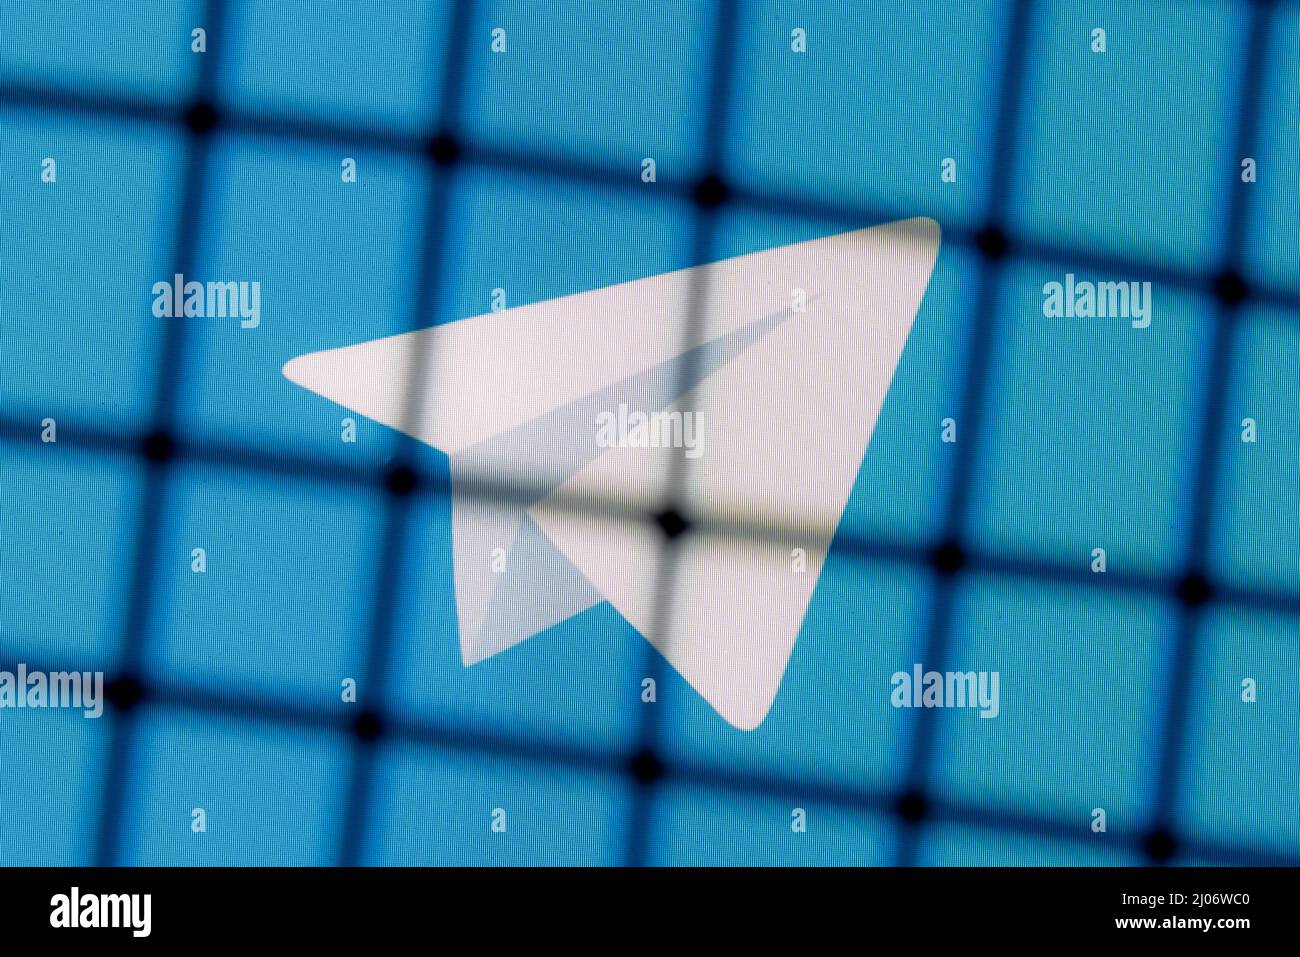 Le logo du Telegram Messenger derrière les barres. Le concept de censure et d'interdiction de Telegram. Banque D'Images